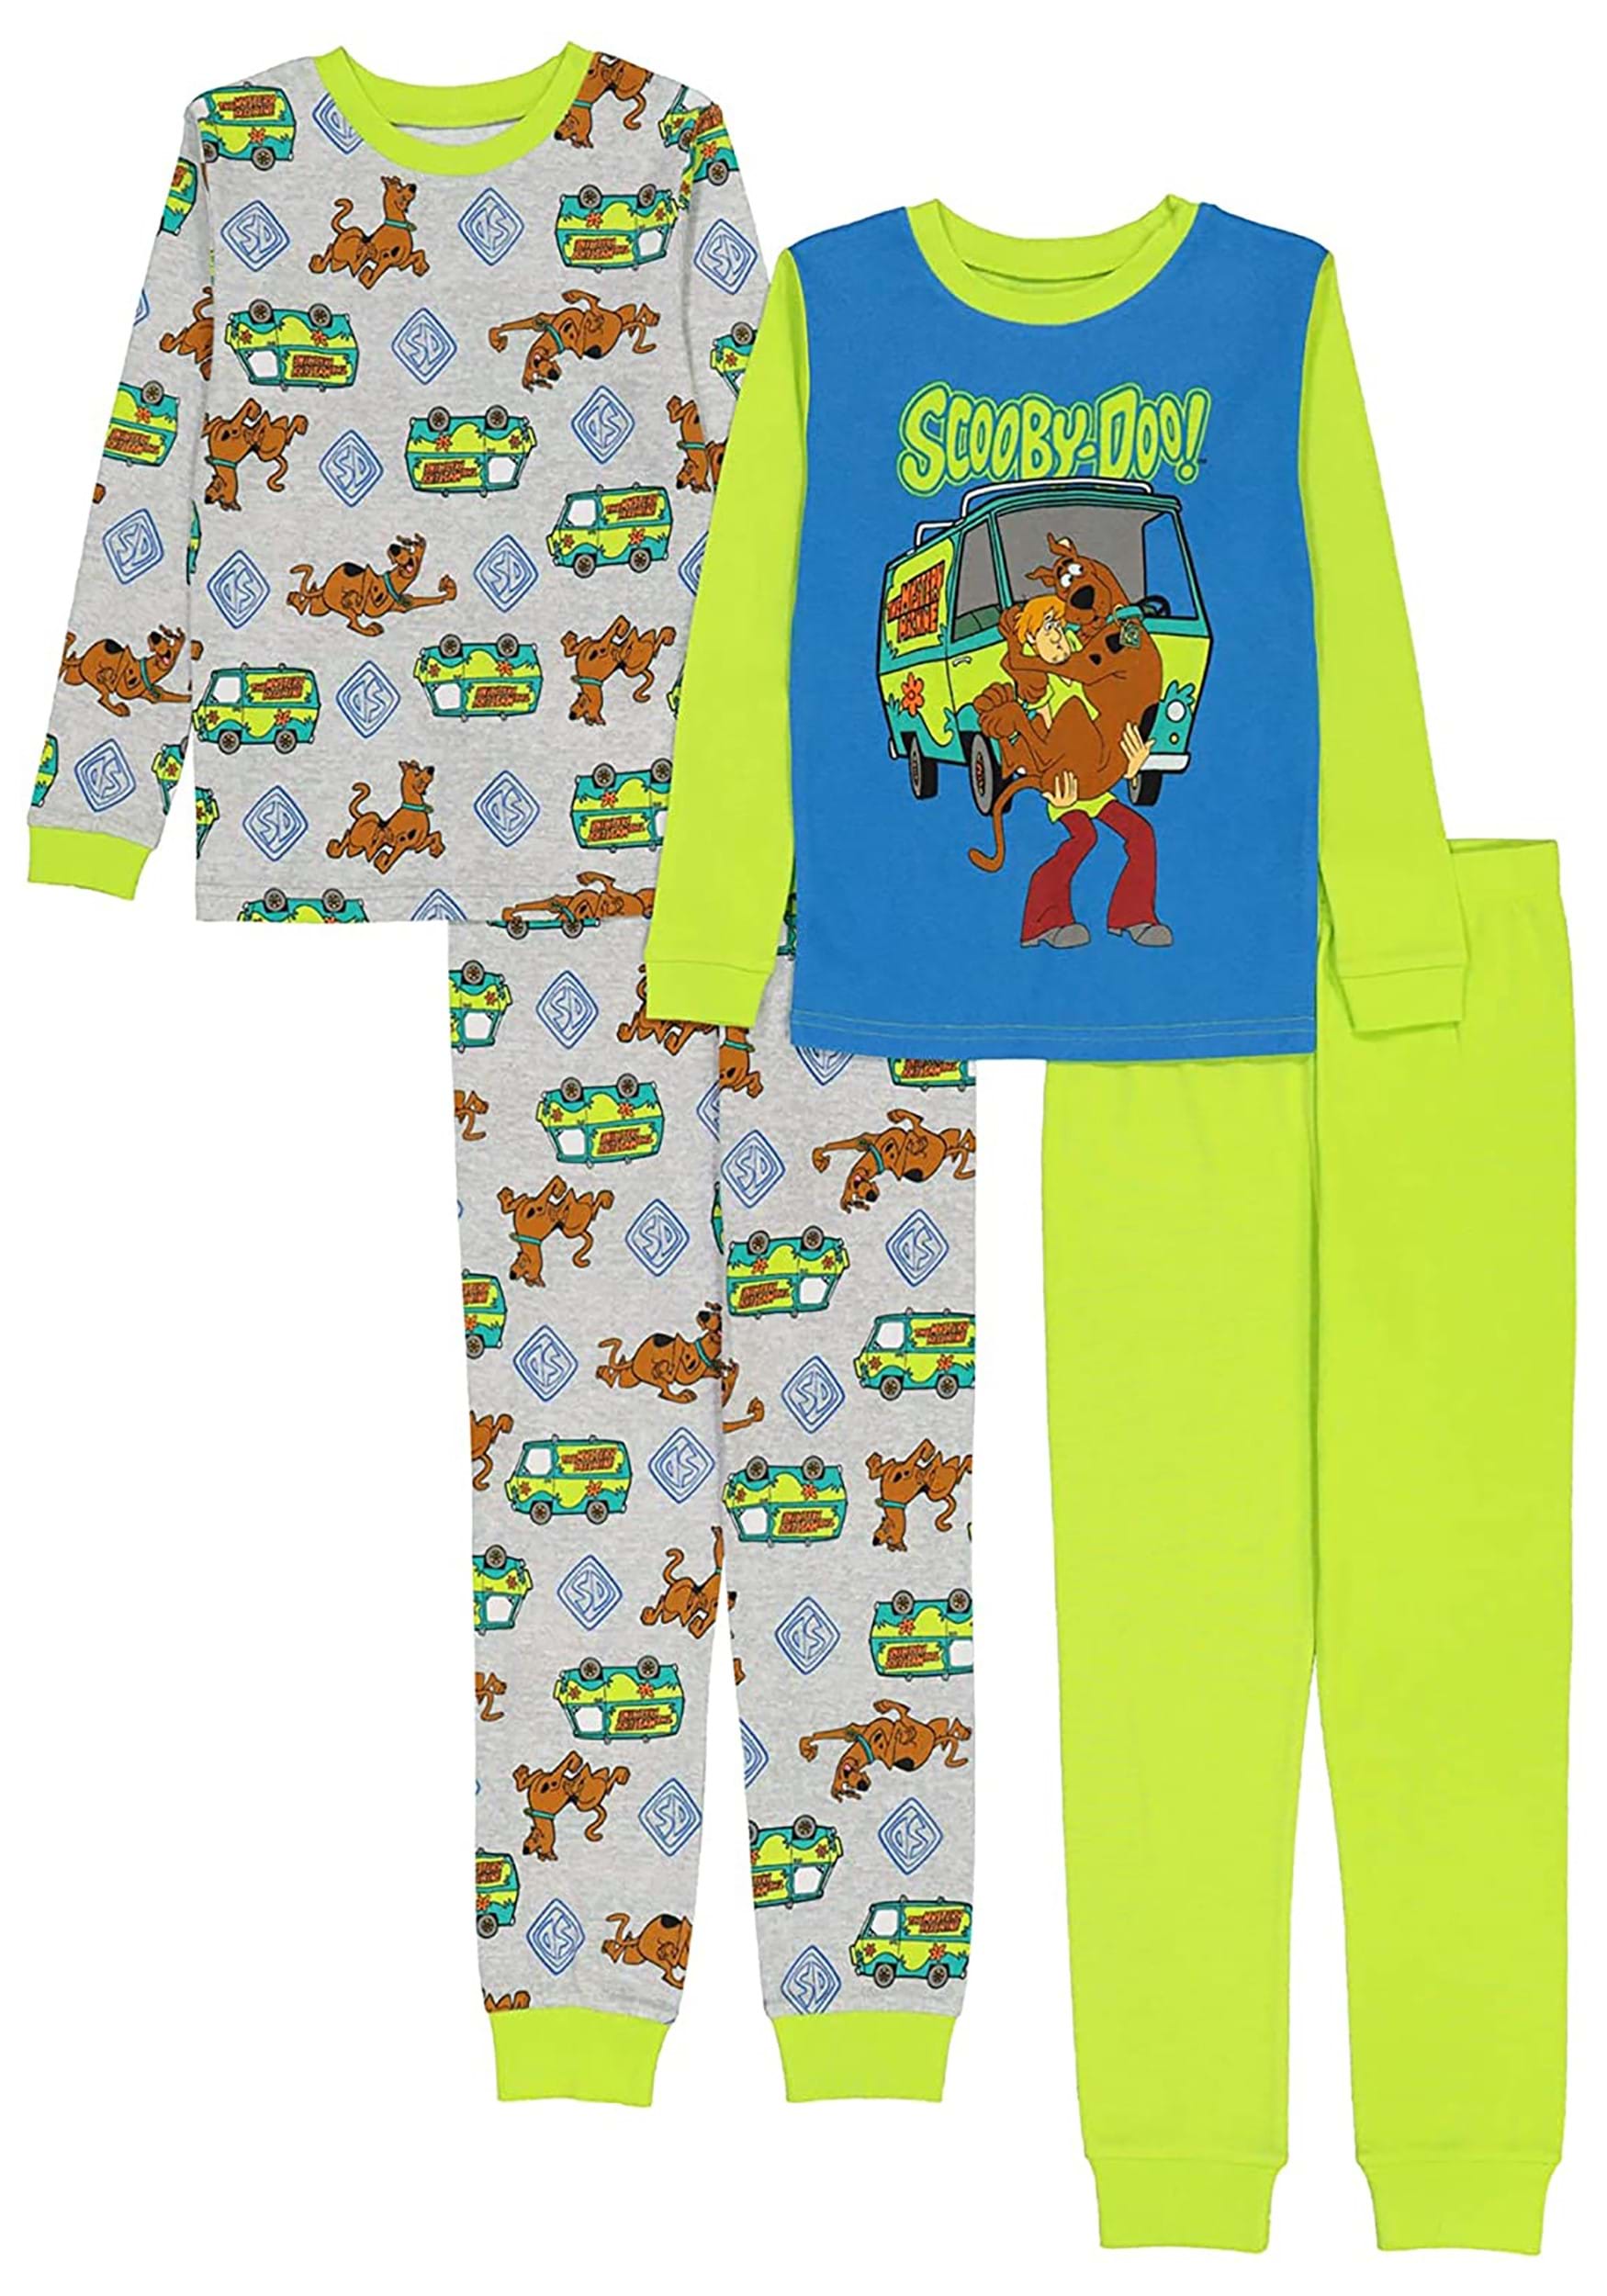 4 Piece Kids Scooby Doo Sleep Set | Scooby Doo PJs